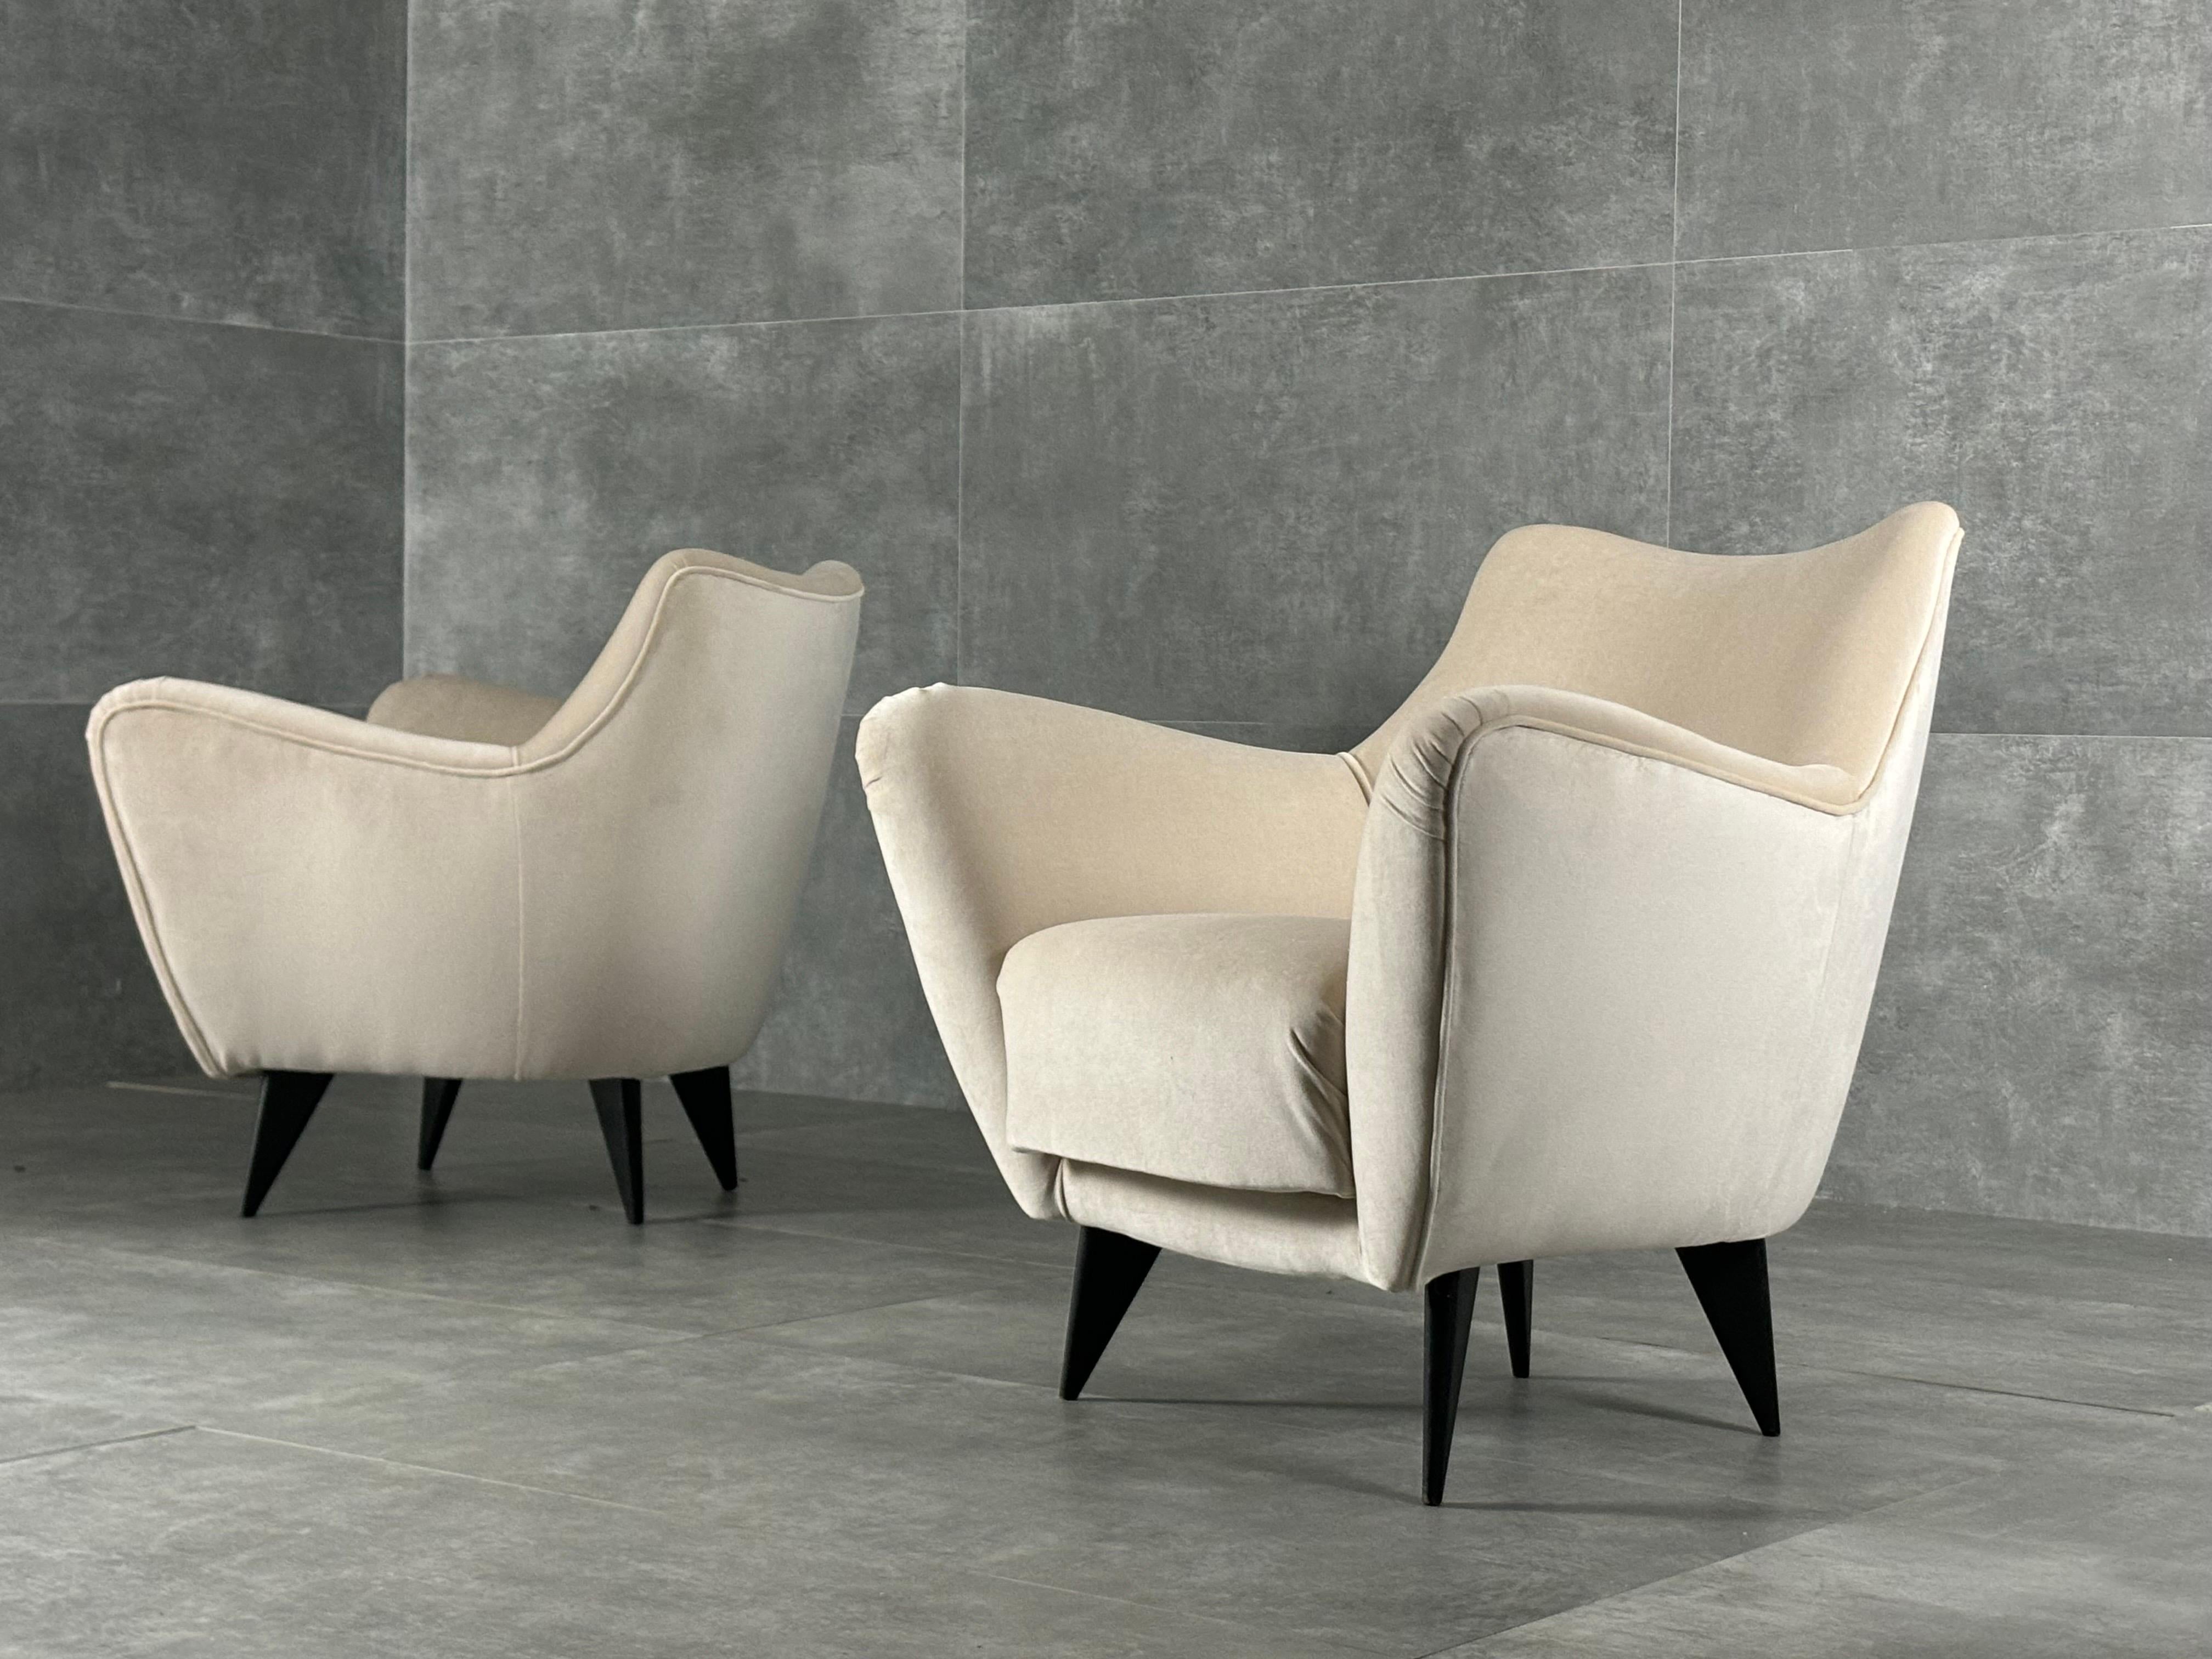 Fauteuils de Guglielmo Veronesi pour ISA Bergamo, Italie, années 1950. Ces fauteuils ont été récemment recouverts de velours ivoire.